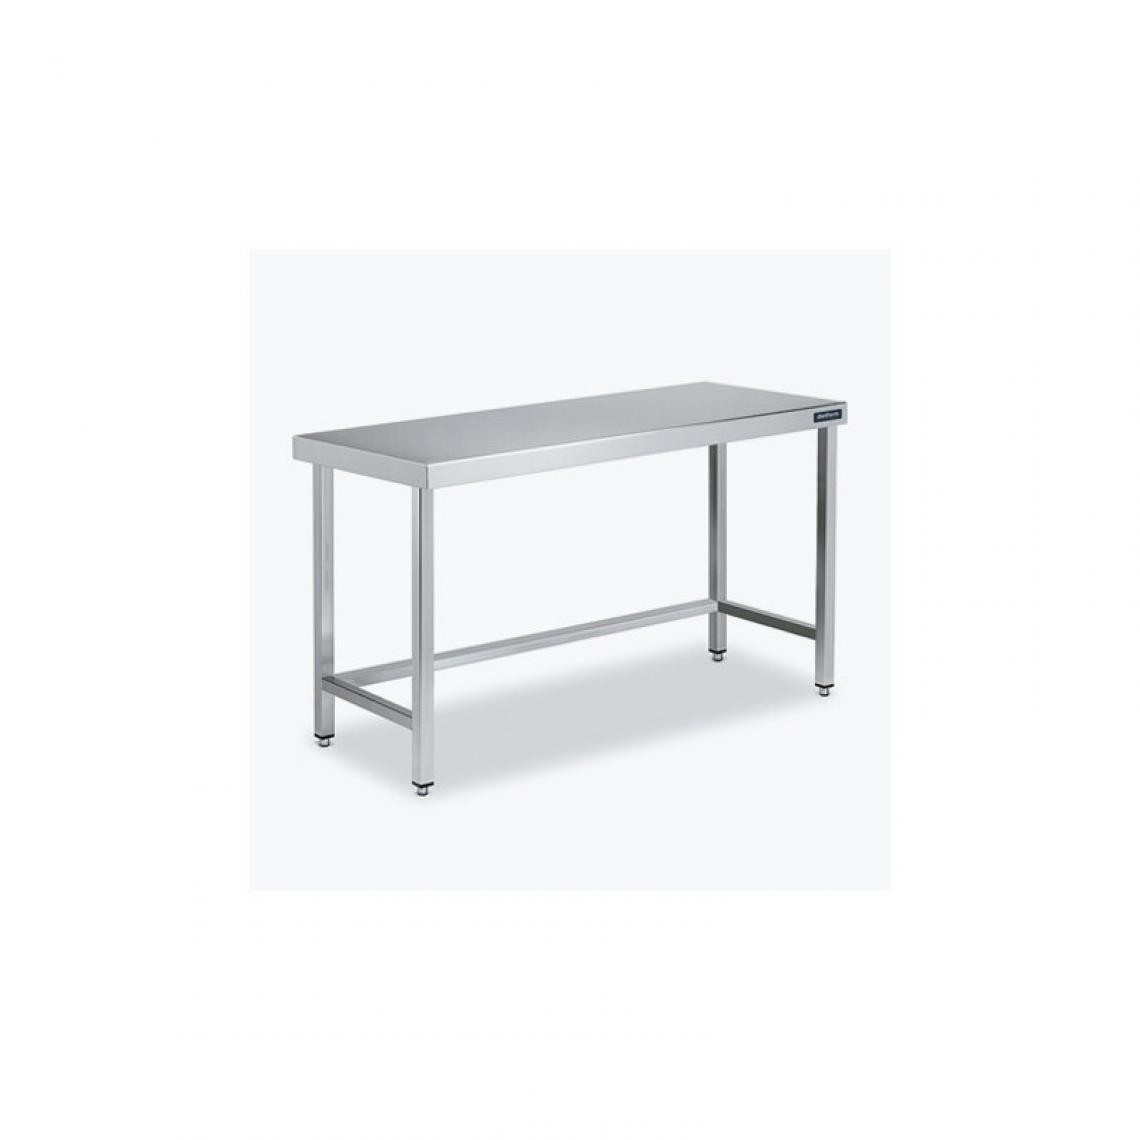 DISTFORM - Table Centrale 600x500 avec Renforts - Distform - Inox 18/101800x500x850mm - Tables à manger